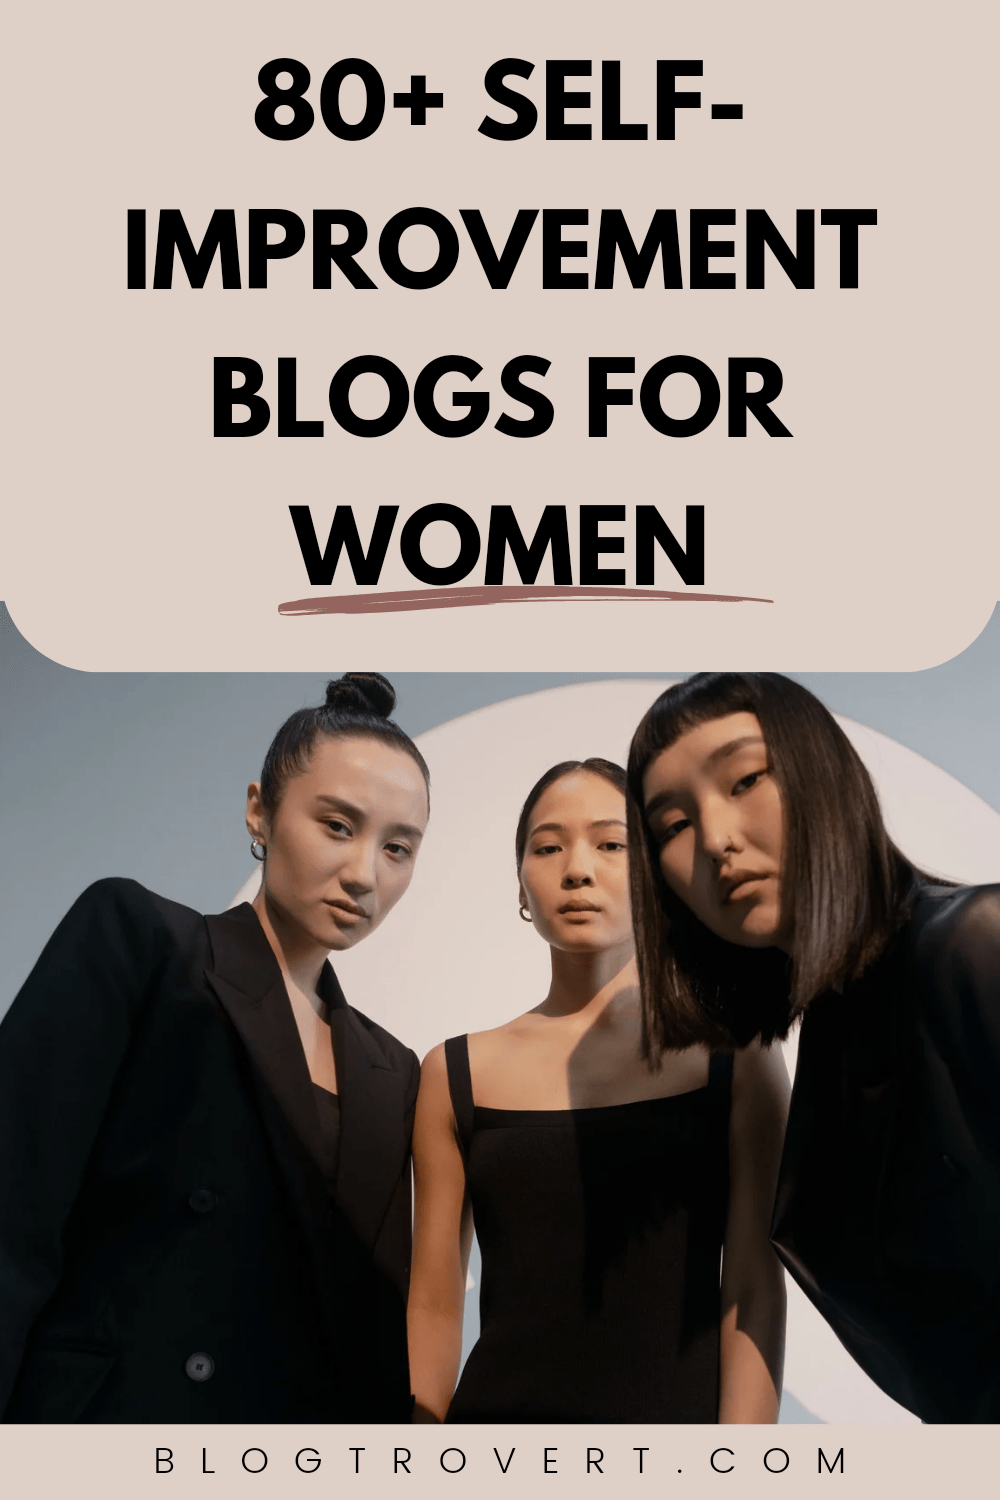 80+ inspiring women's self improvement blogs and websites 2